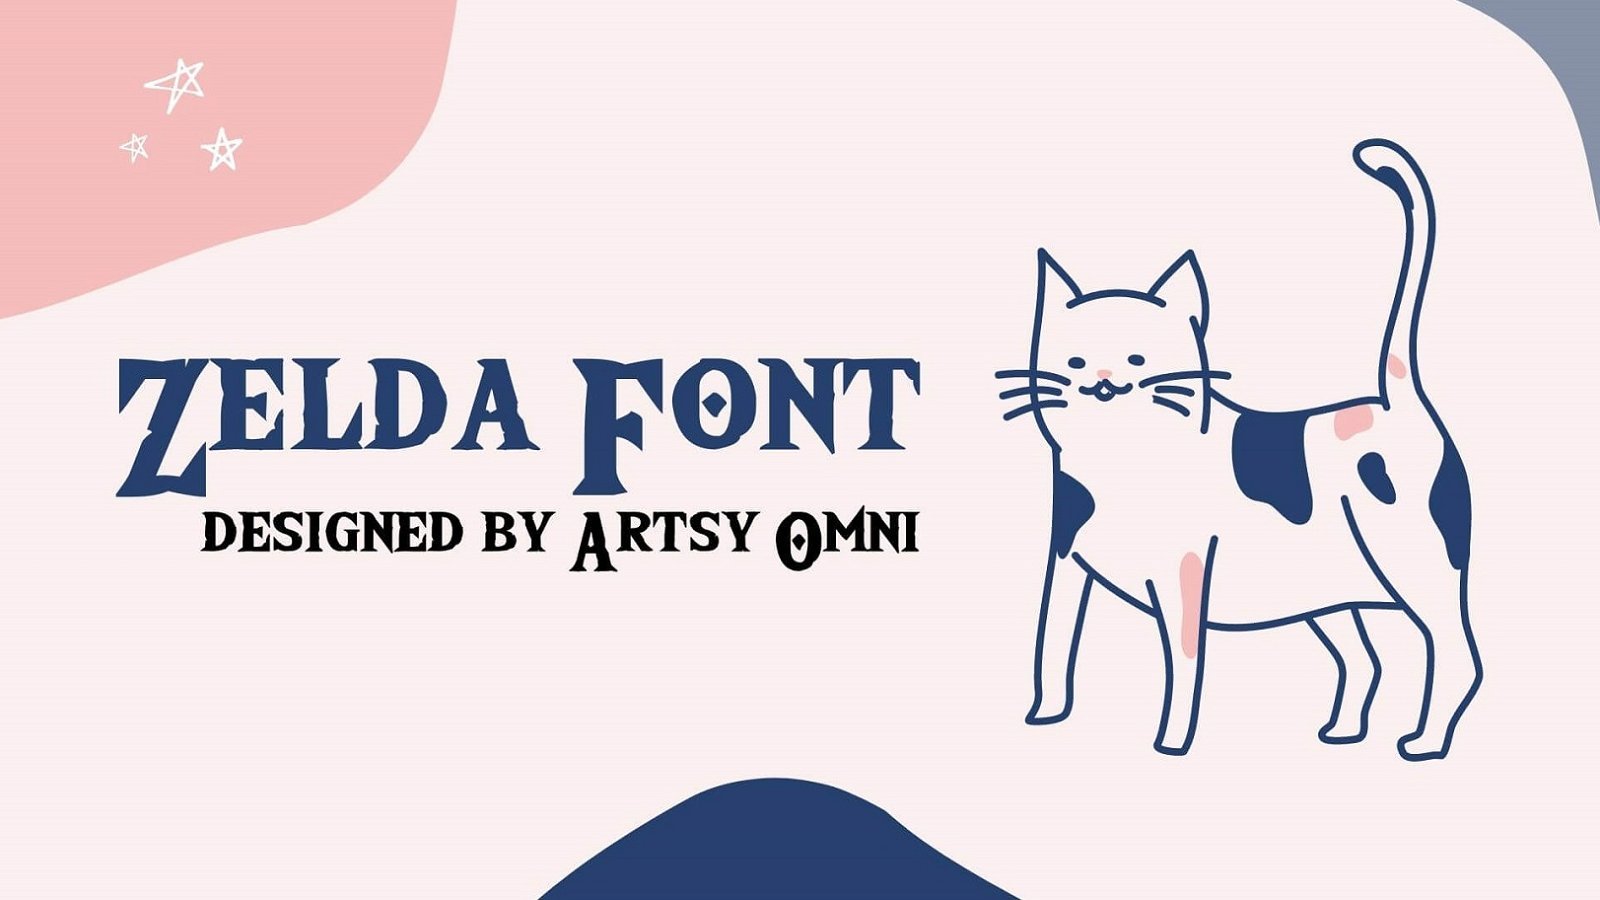 download legend of zelda font